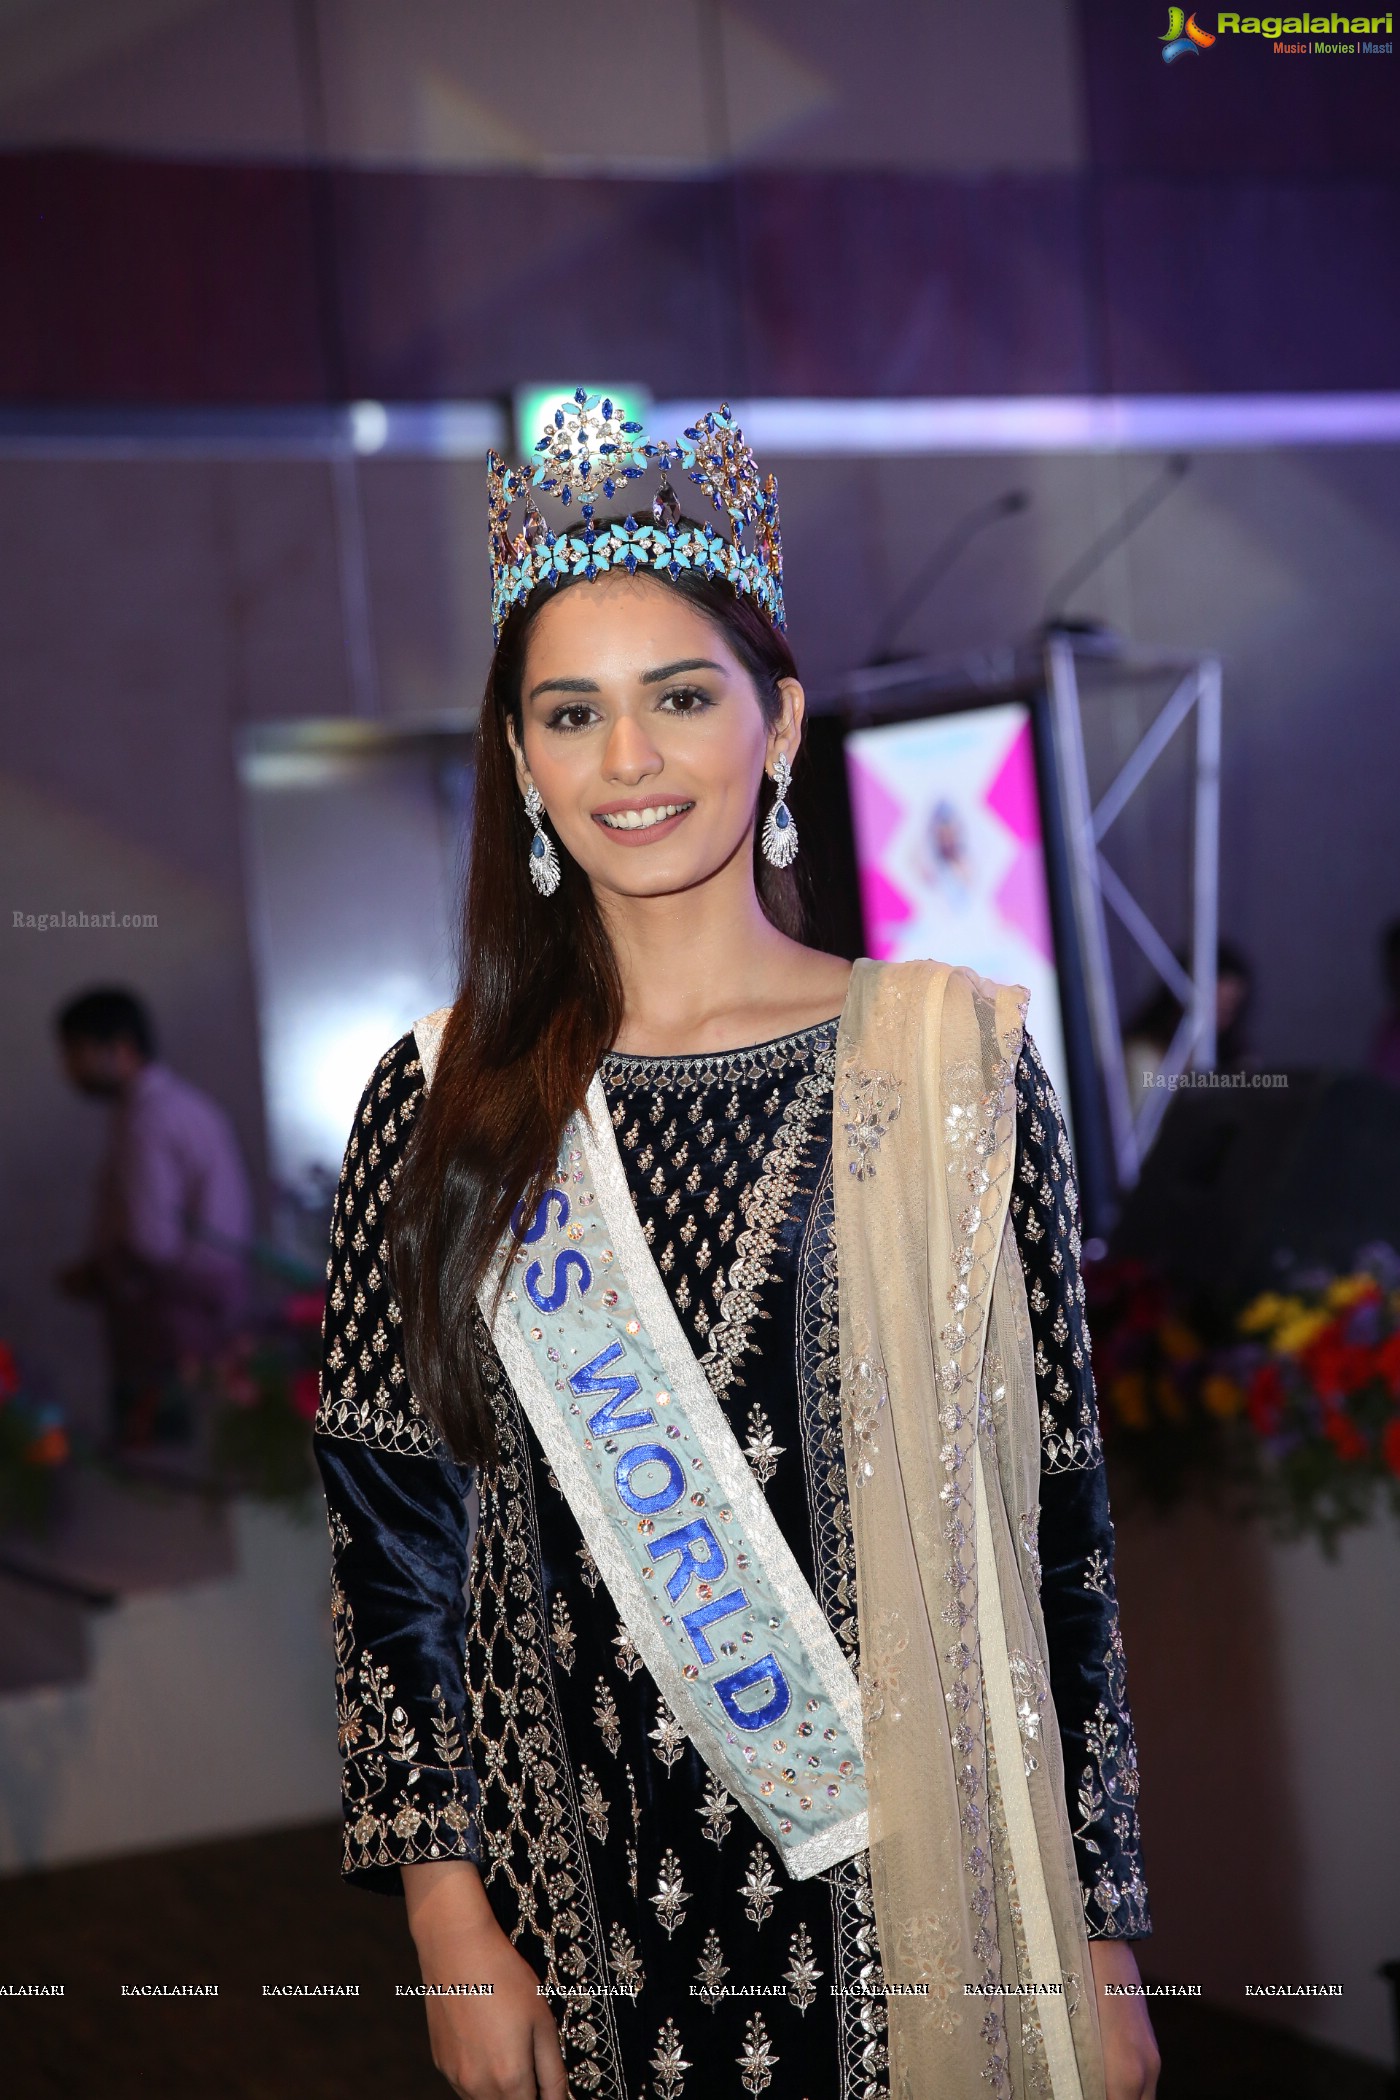 Manushi Singh Chhillar - Miss World 2017 (Posters)